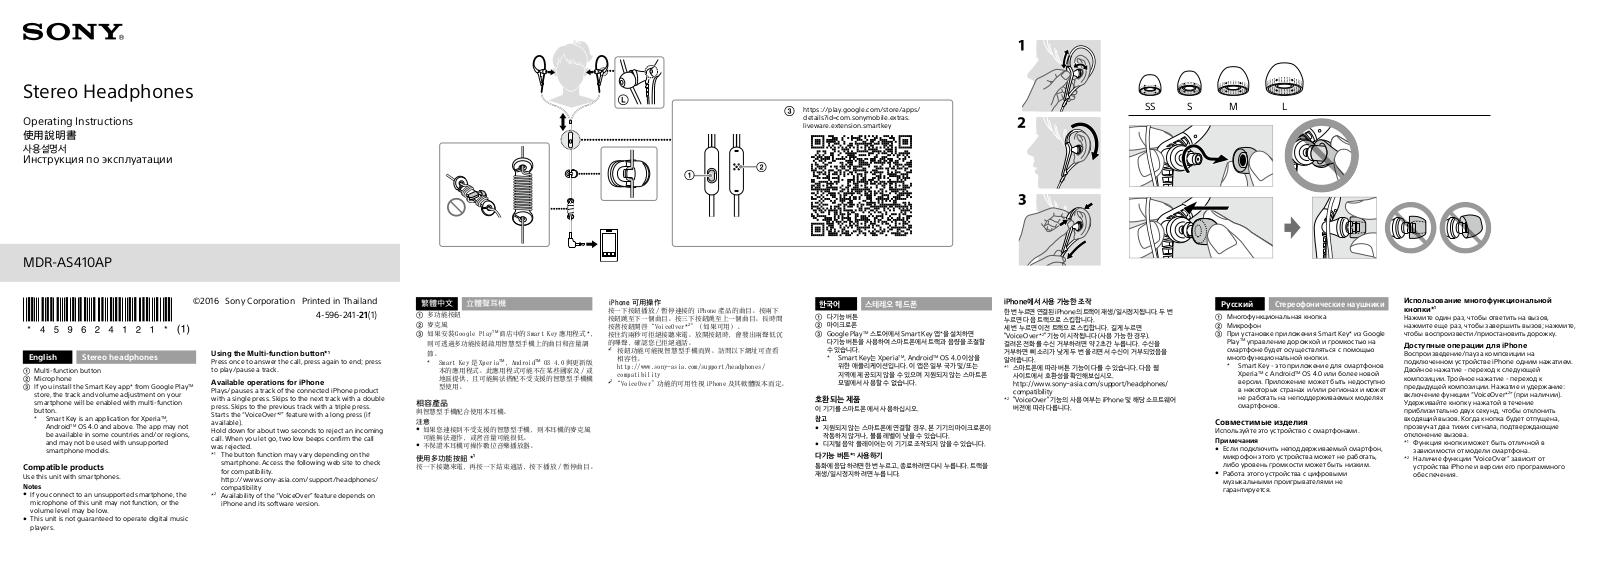 Sony MDR-AS410AP User Manual